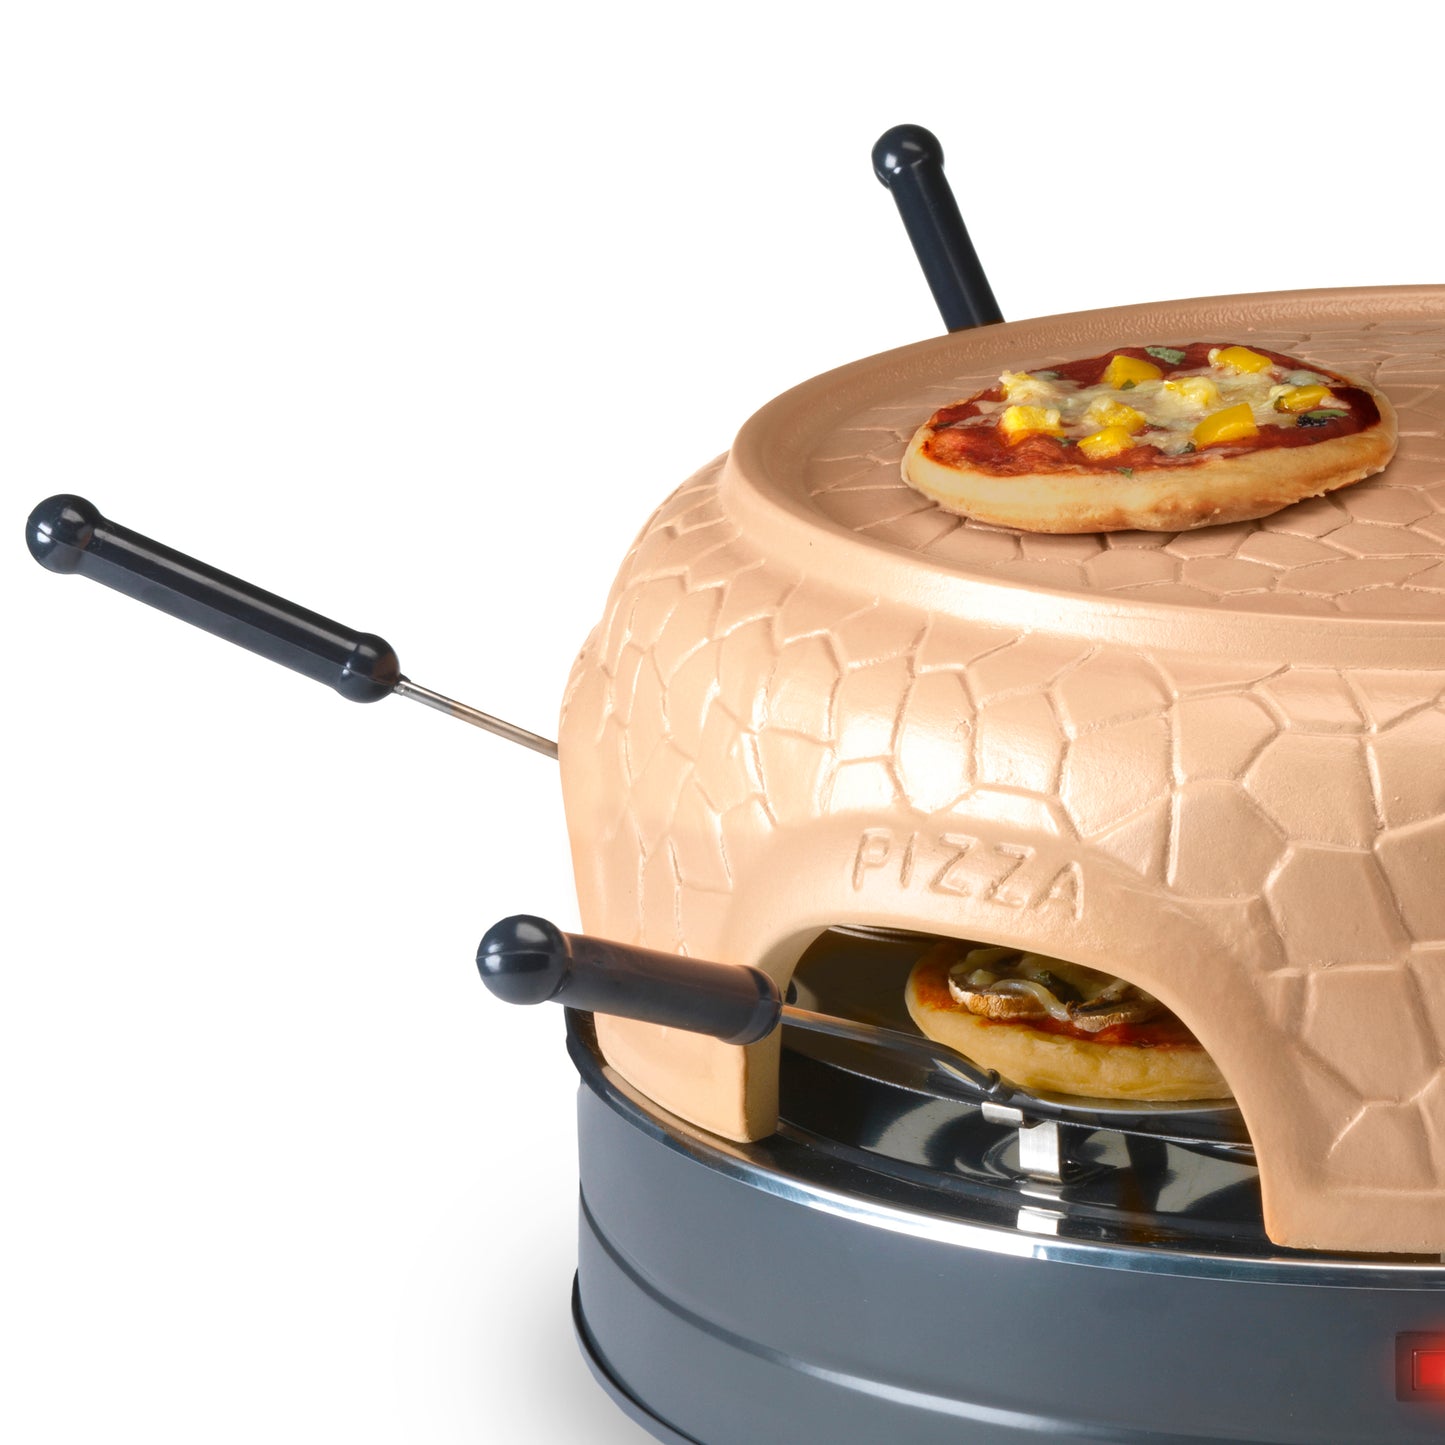 Gastronoma 18310017 - Pizza oven voor 6 personen - Inclusief bakspatels, bakplaat en pizzavorm - Keramiek/Grijs